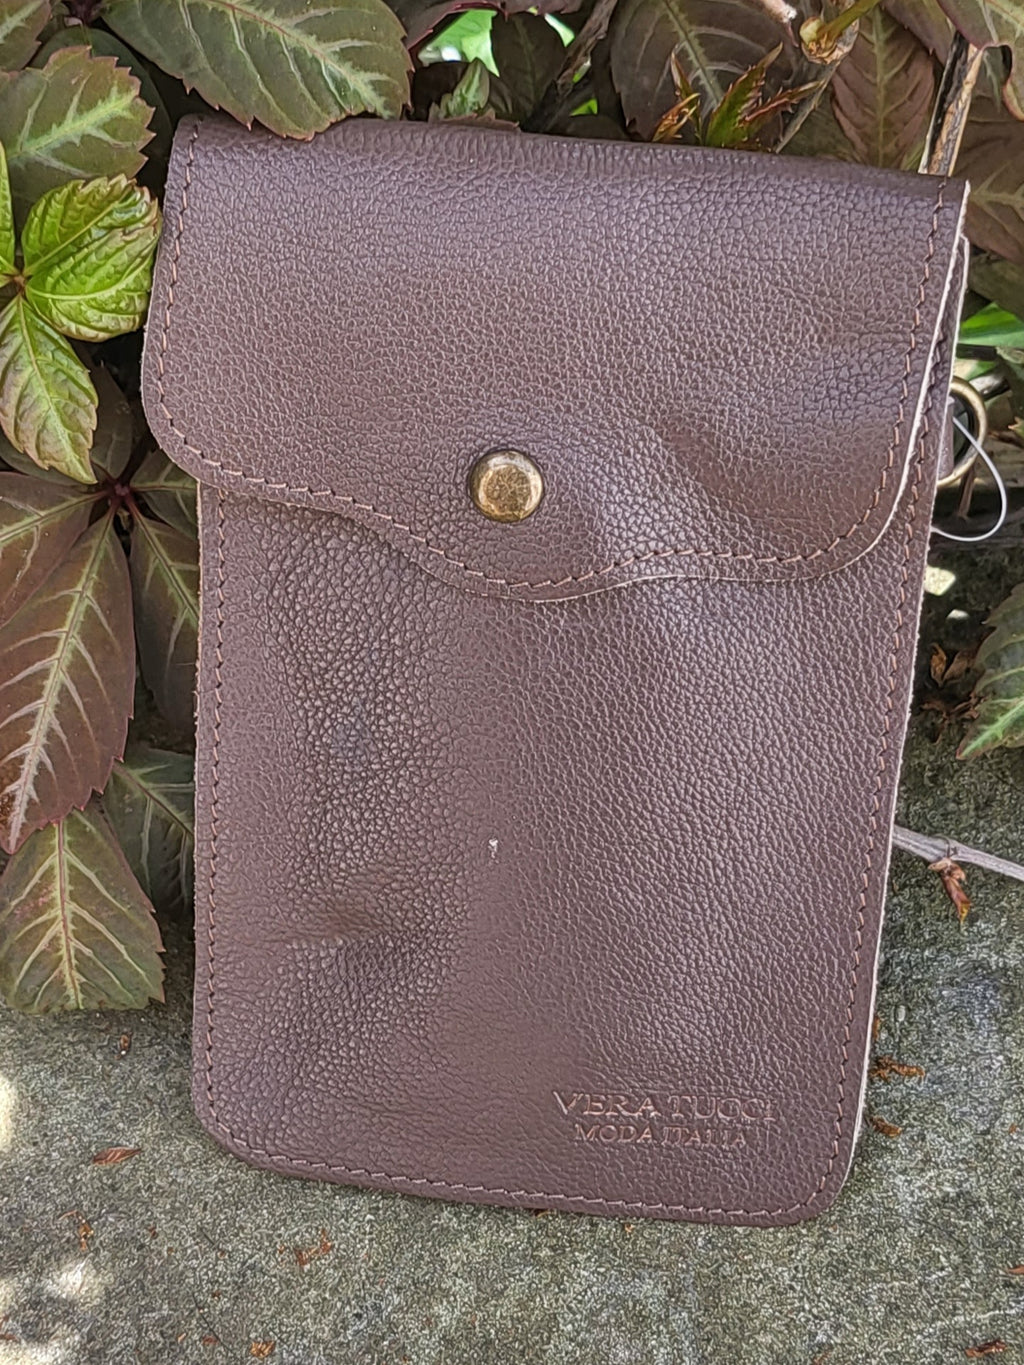 Vera Tucci Rita - Cross Body Small Leather Pouch Bag (BLACK